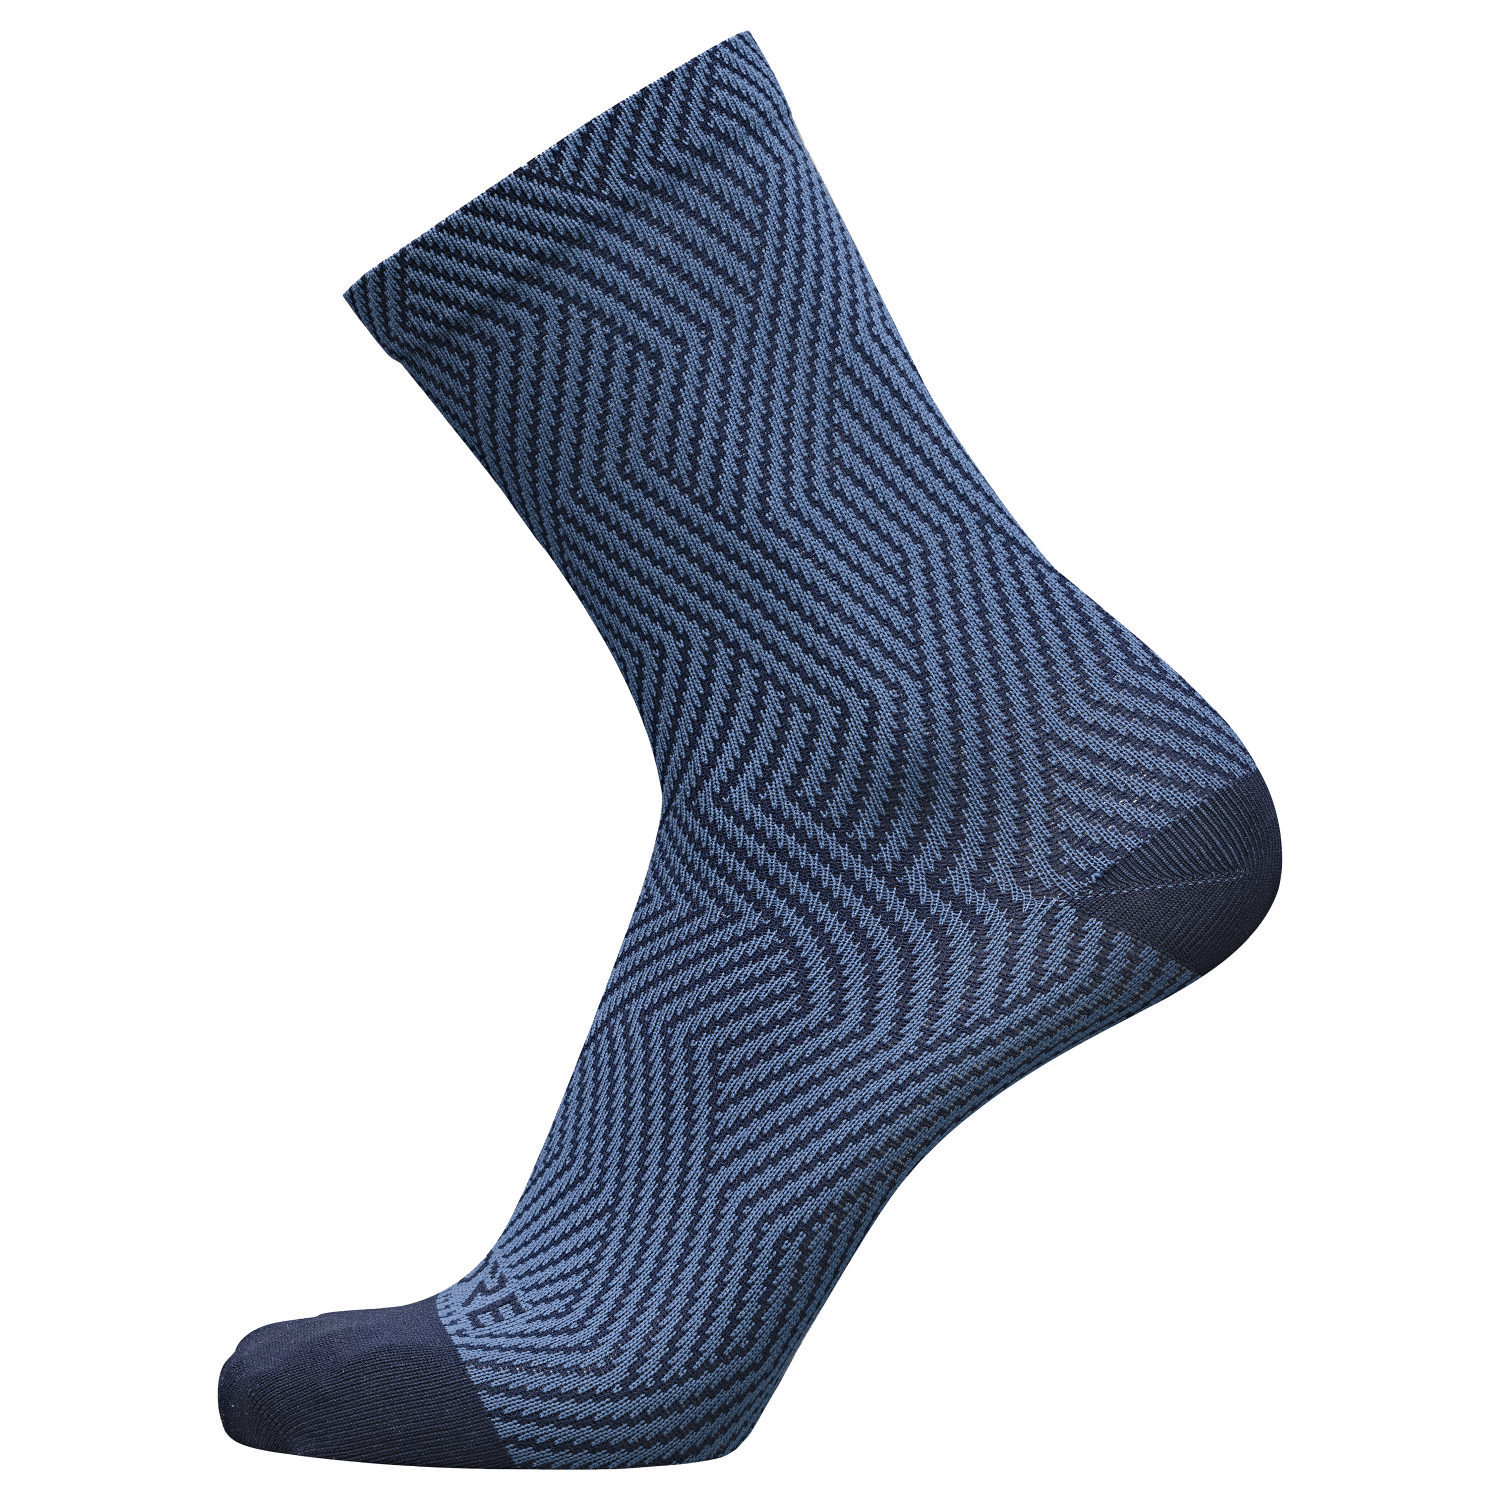 GOREWEAR C3 Mid Socks in Orbit Blue/Deep Water Blue | 8-9.5 | Moisture Wicking